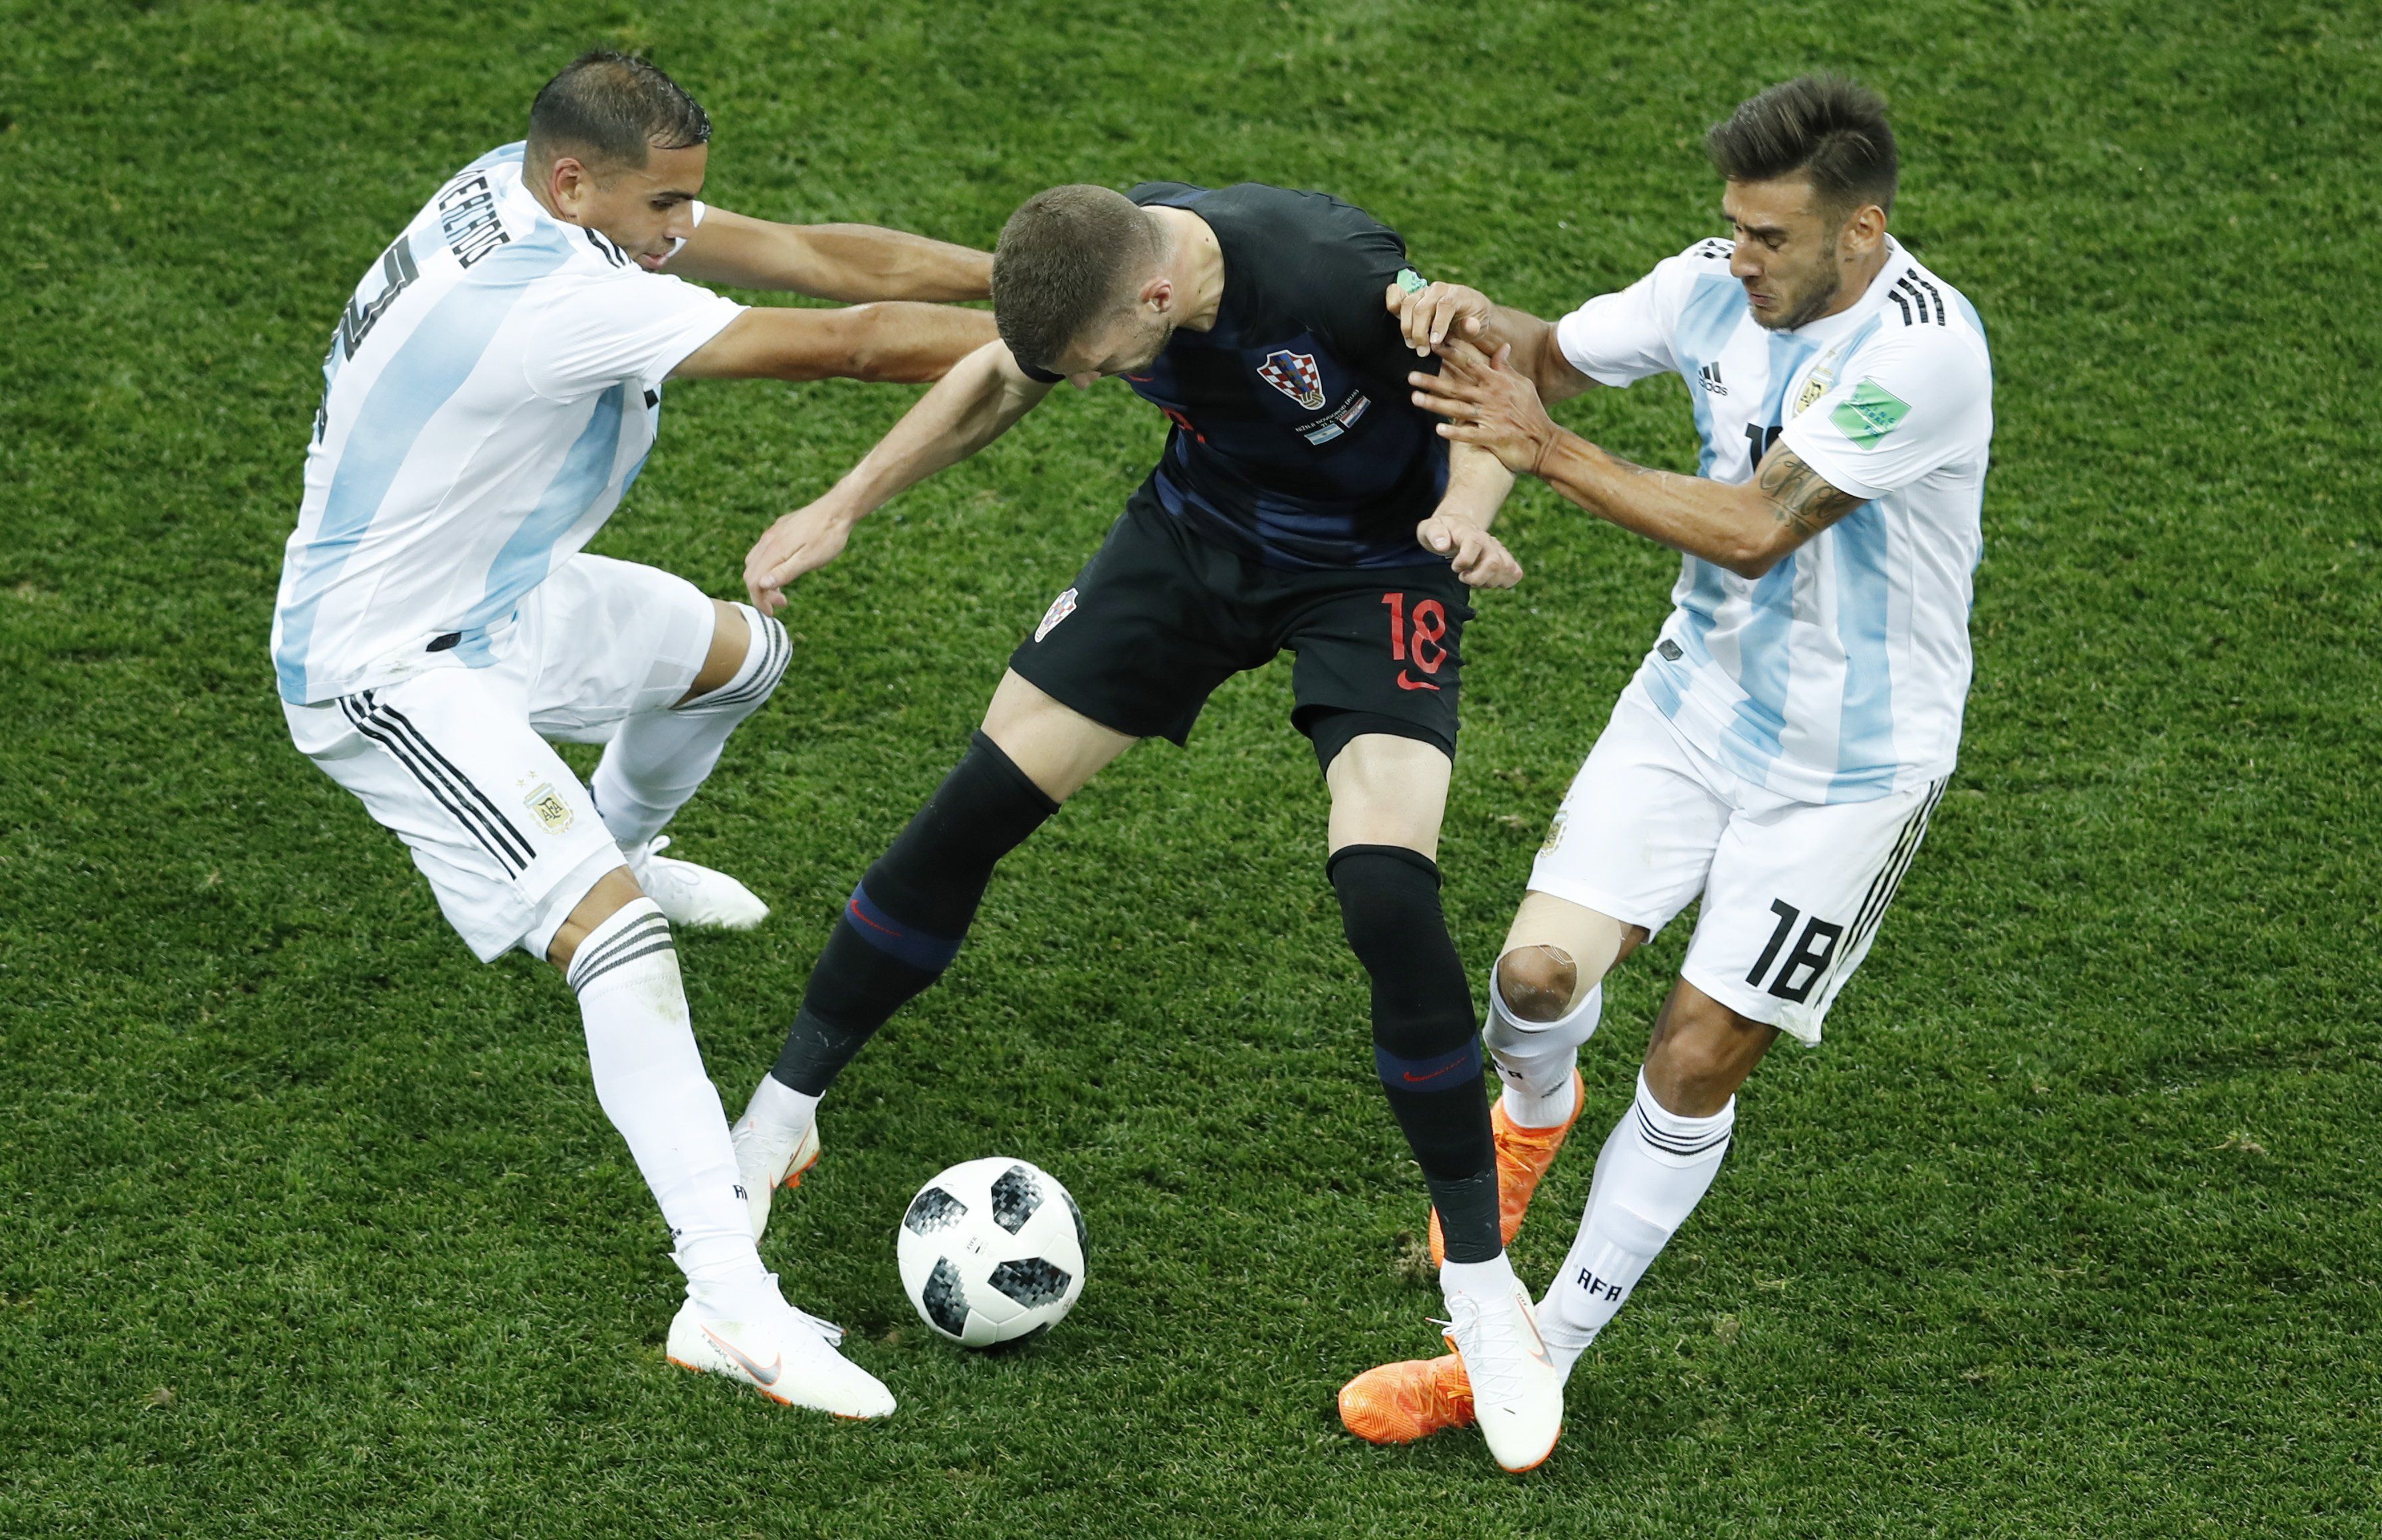 VÉGE: A horvátok nem tudták megállítani Argentínát, amely ötödször vb-döntős